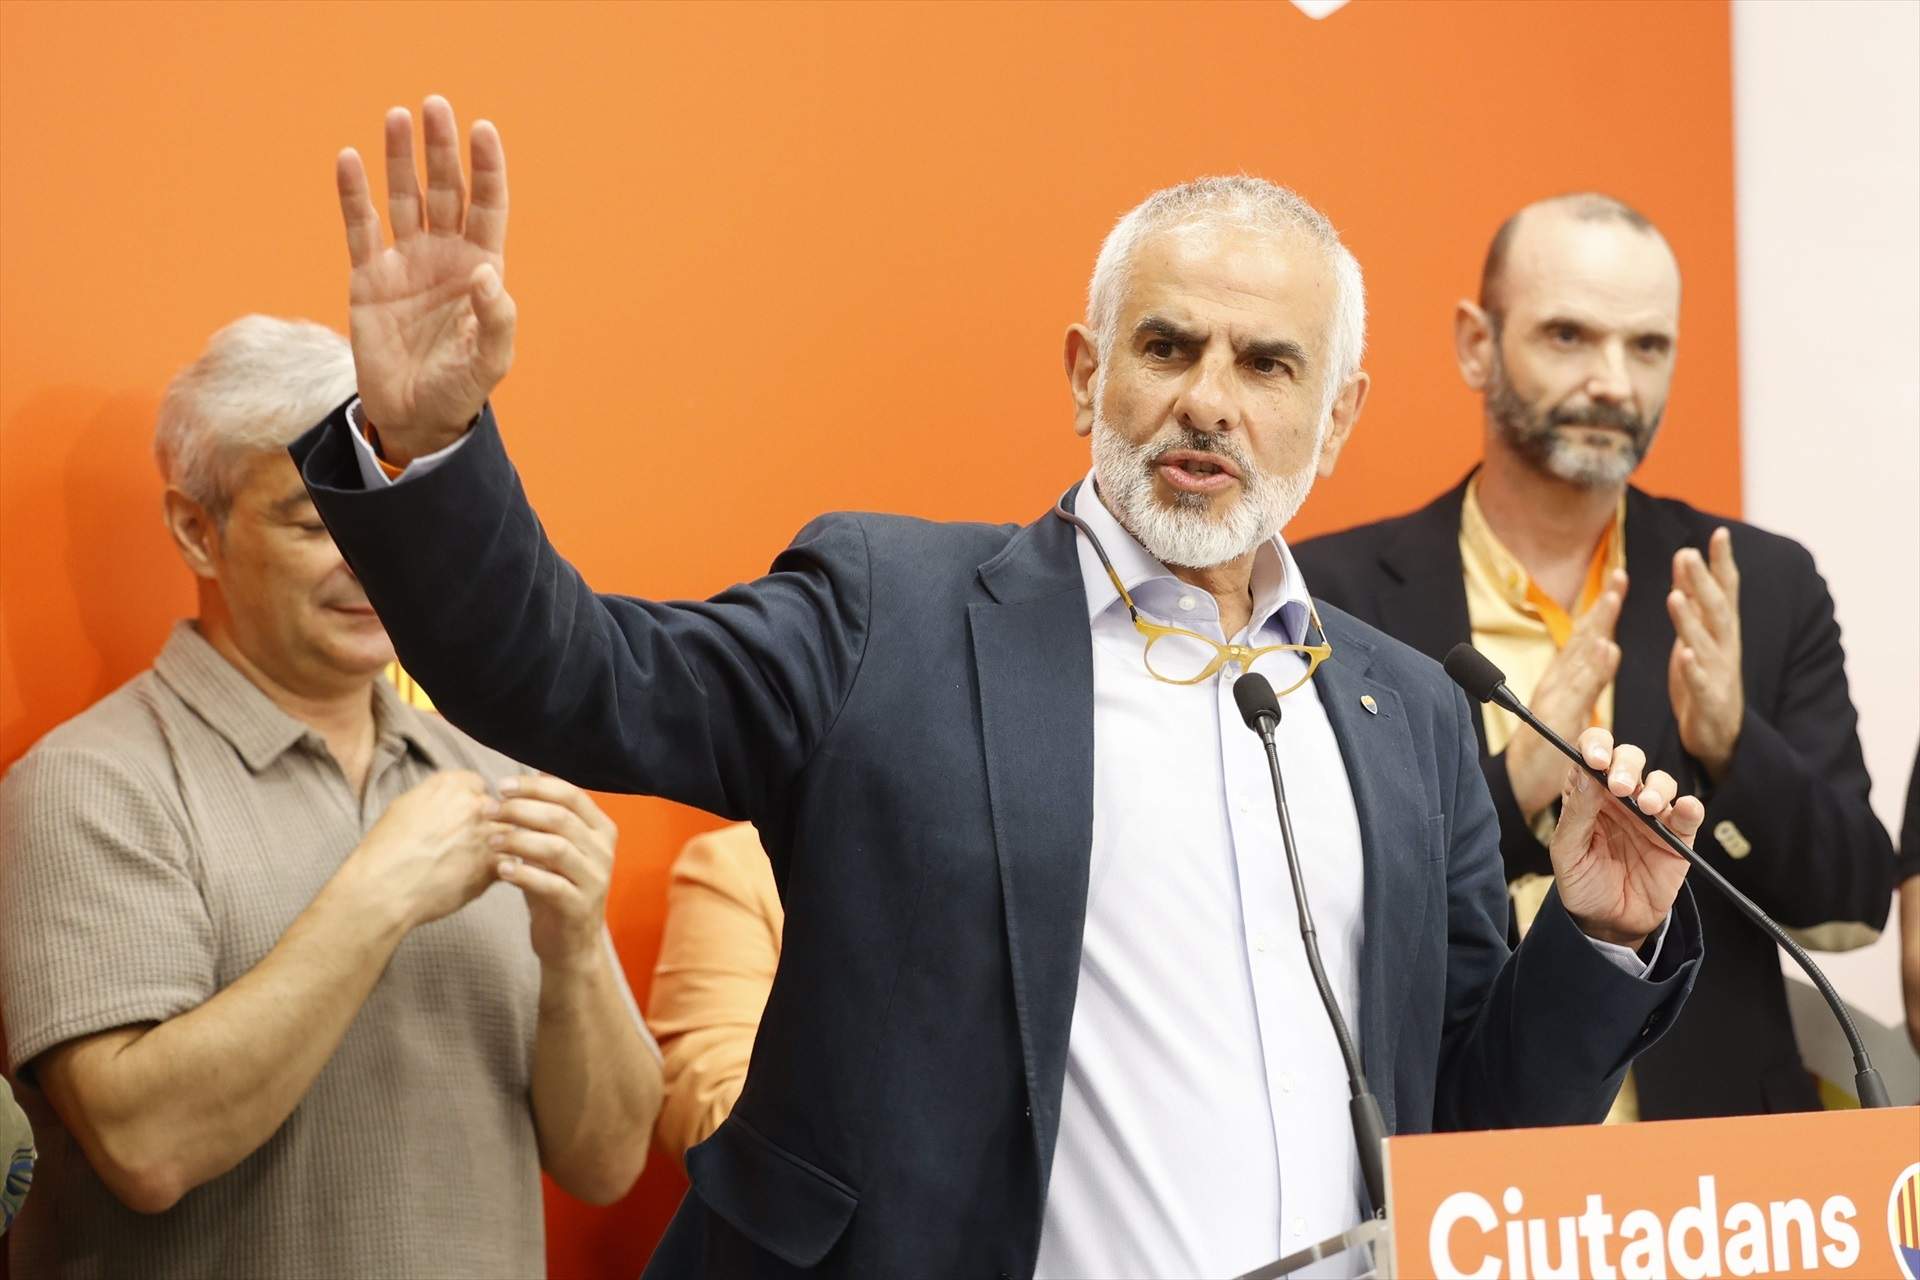 El adiós de Carlos Carrizosa: anuncia discretamente su dimisión como presidente de Ciudadanos en Catalunya